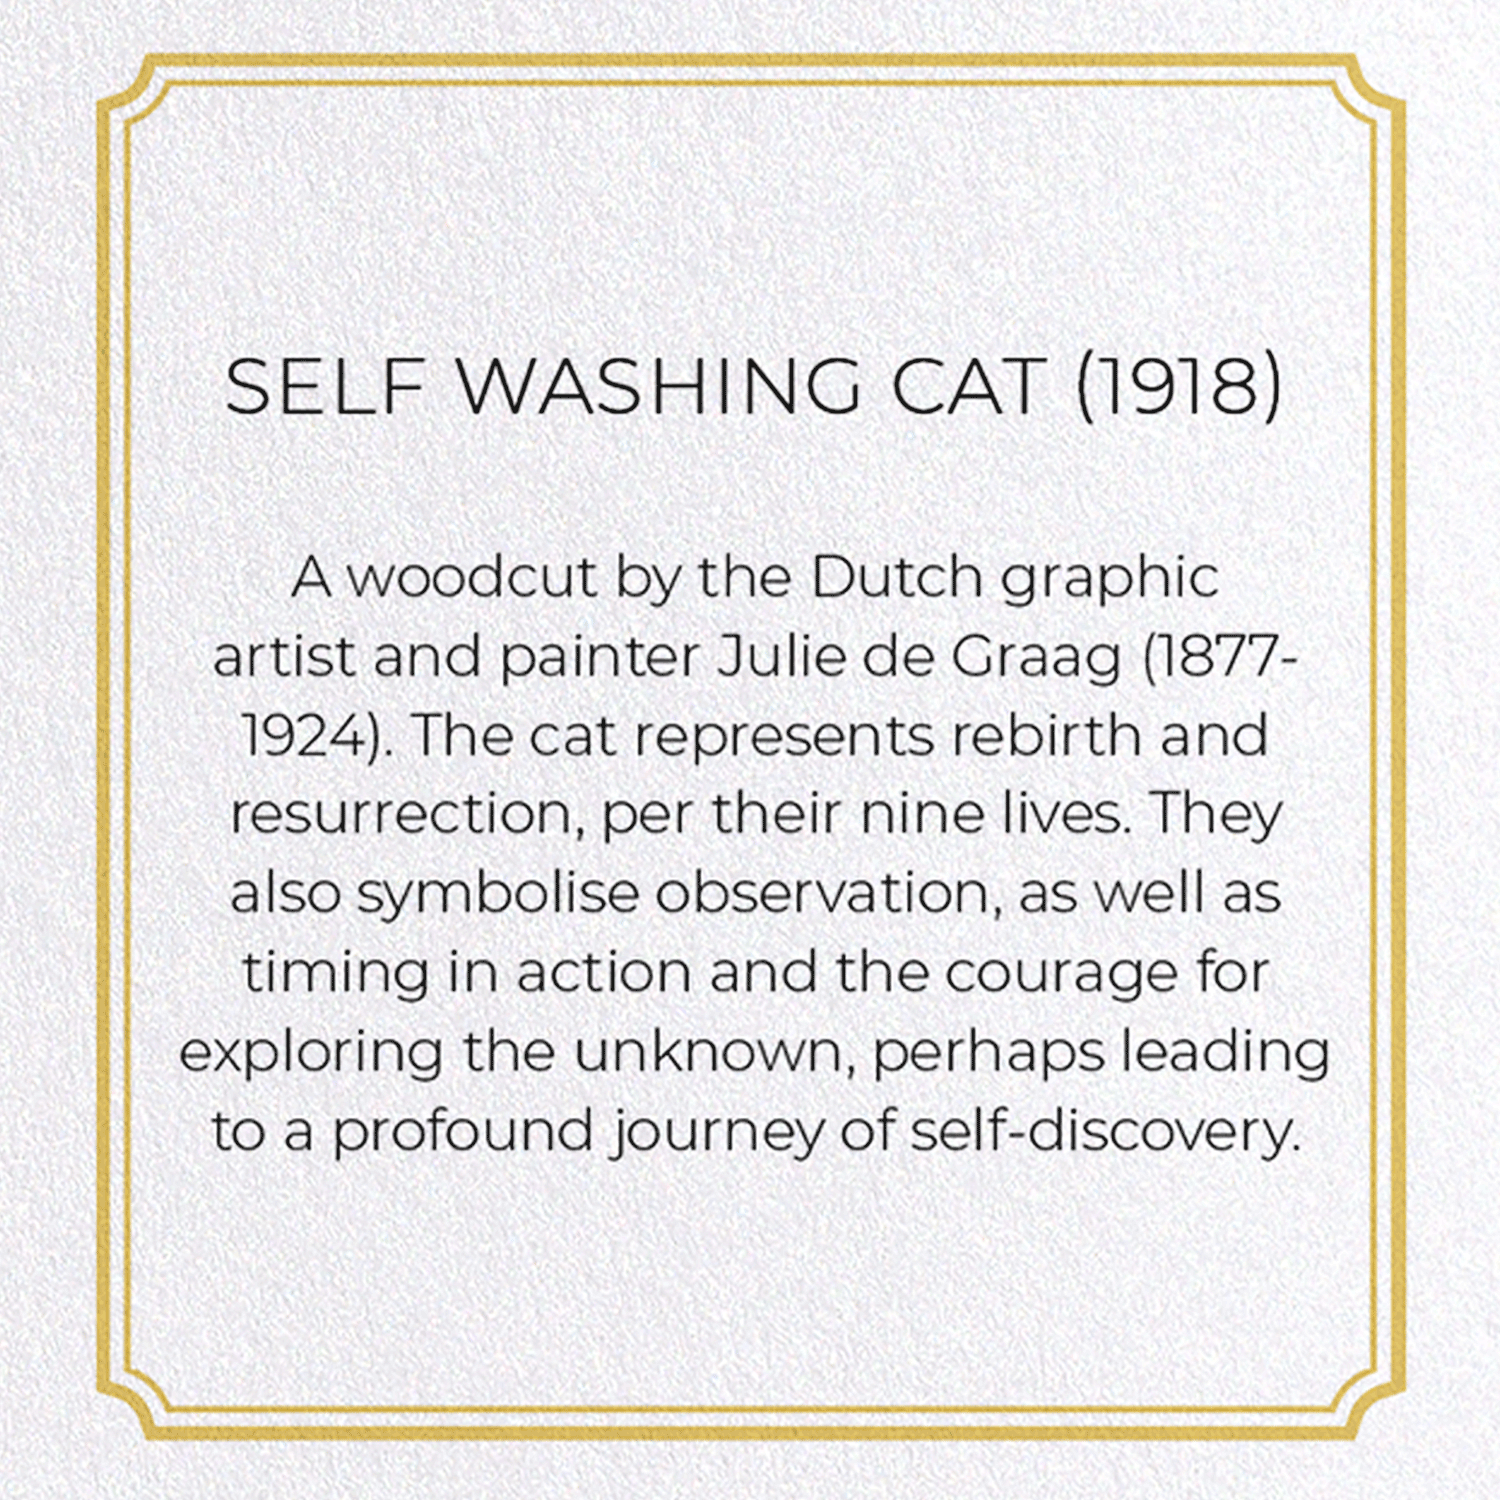 SELF WASHING CAT (1918): Vintage Greeting Card